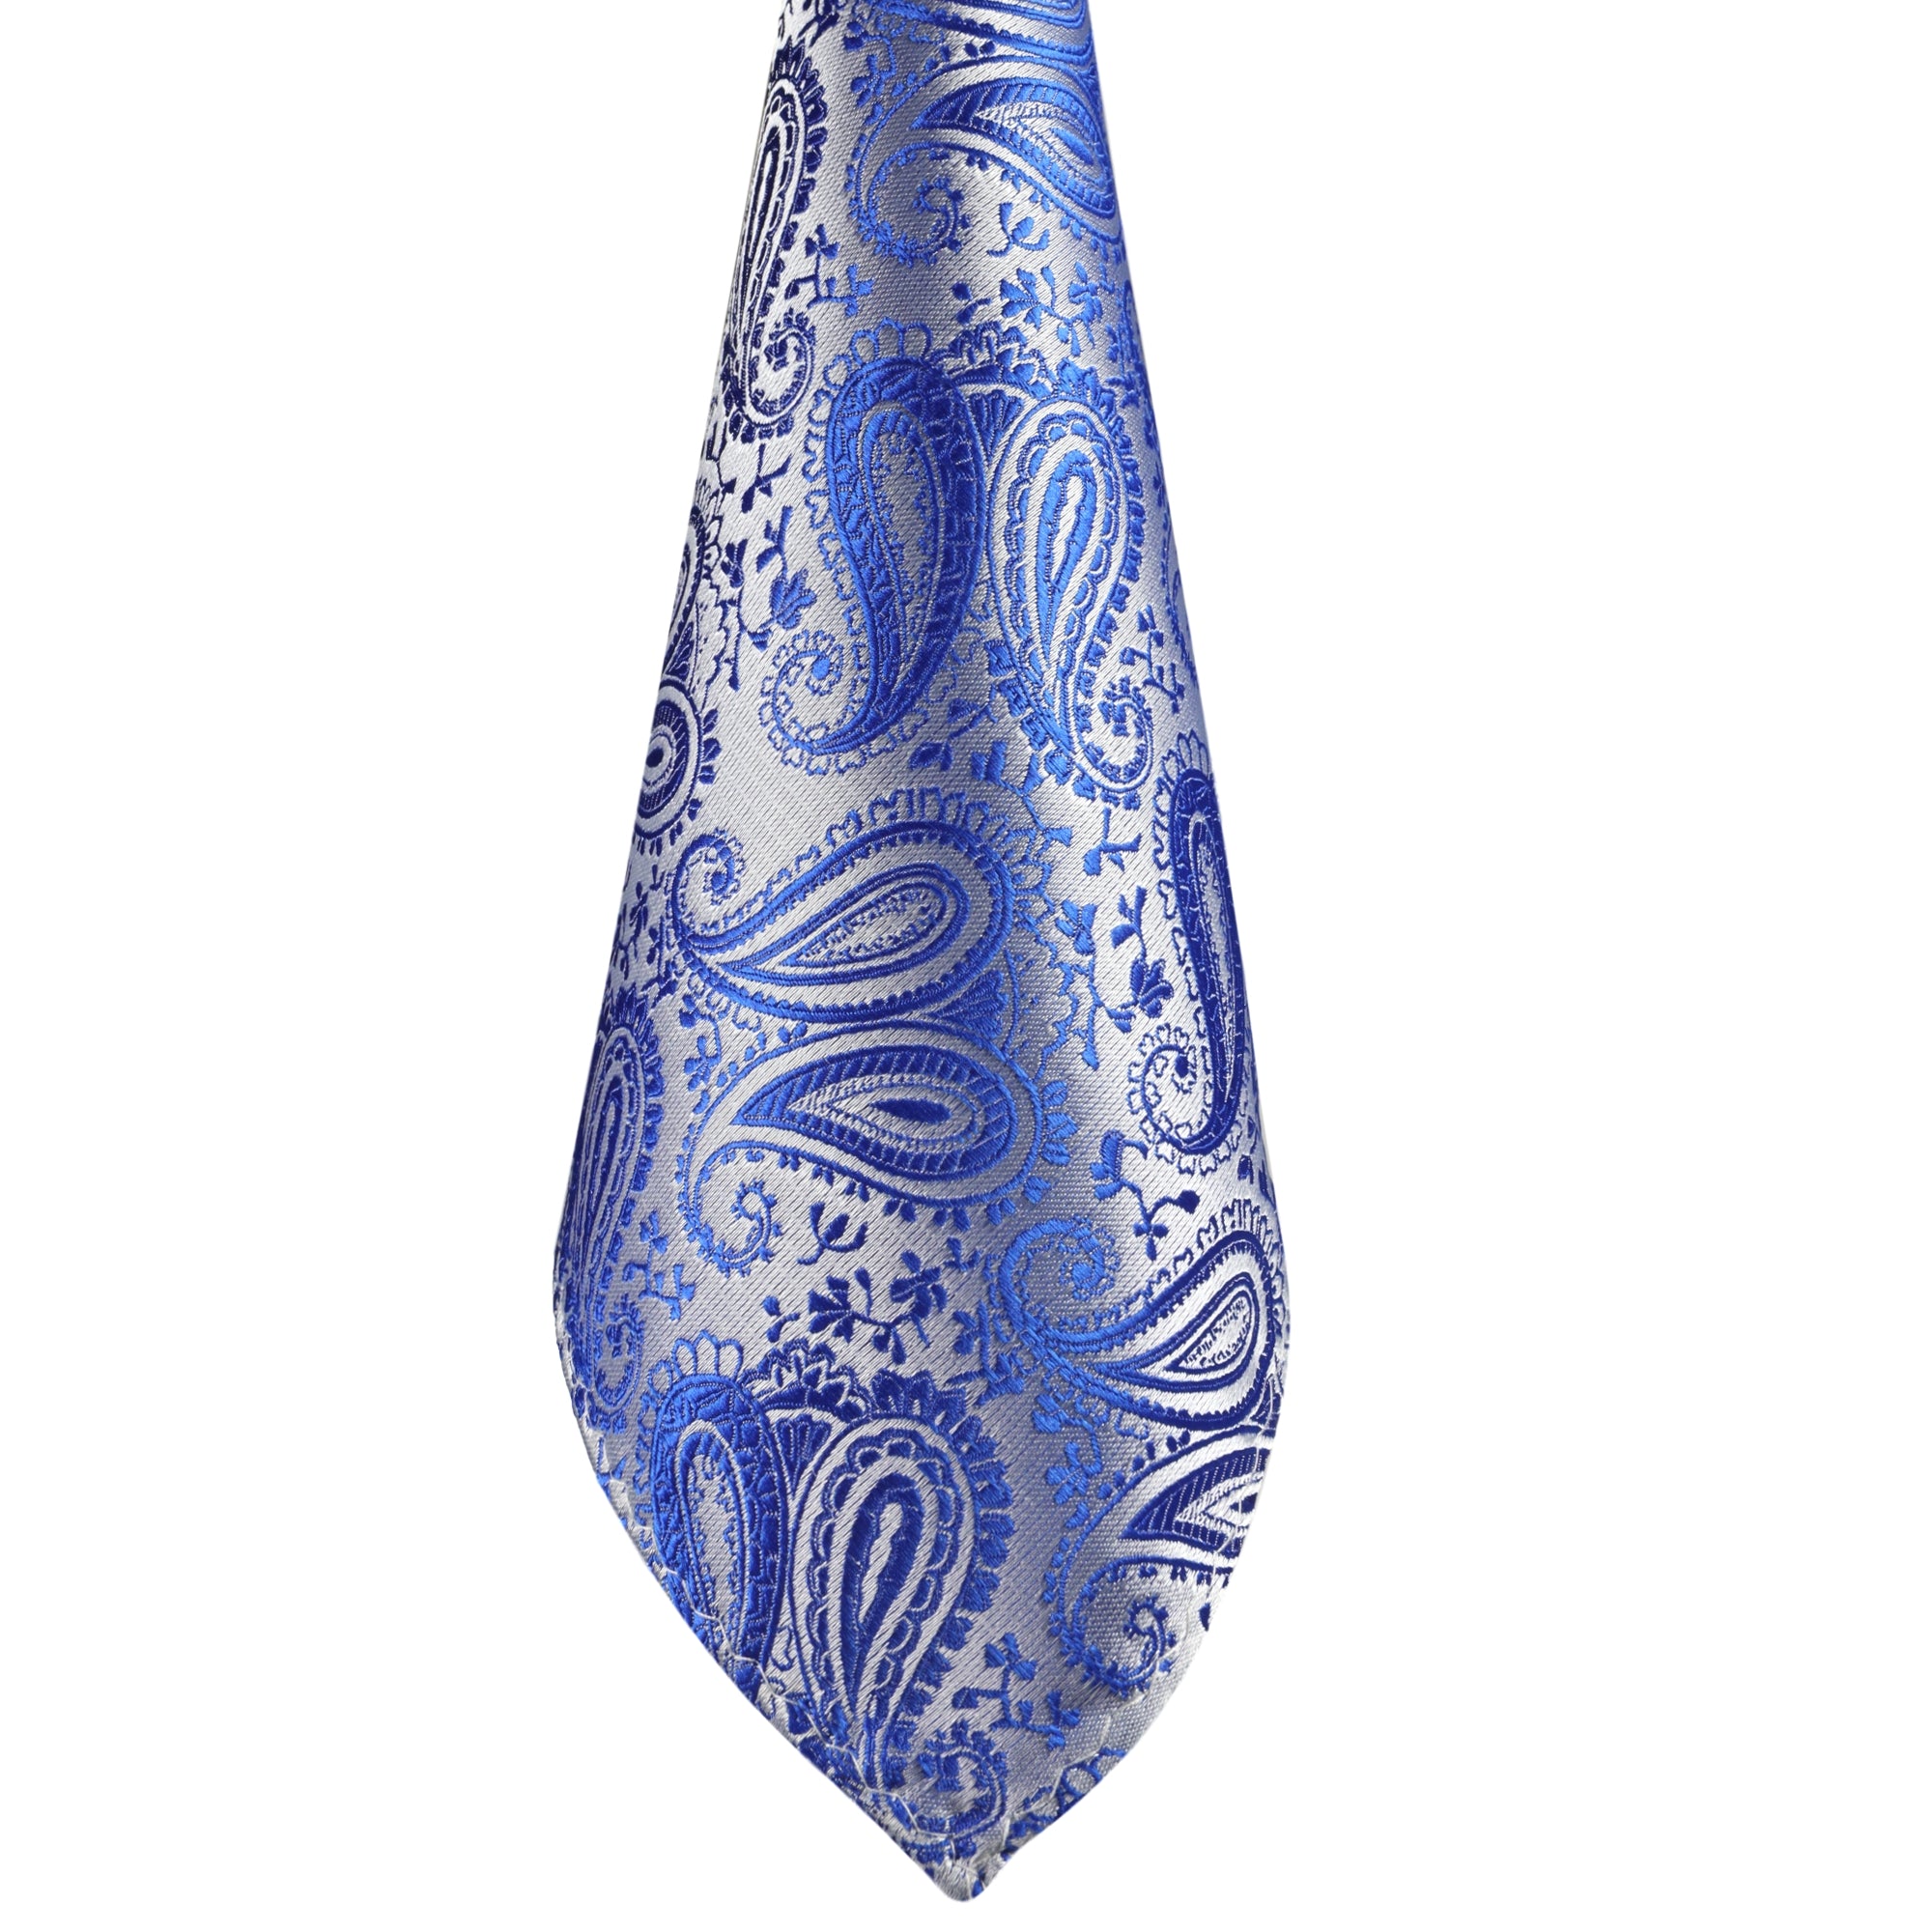 Kaufen Sie Silber-Blaue Paisley-Krawatte designt - GASSANI | GASSANIshop.de für Krawatten